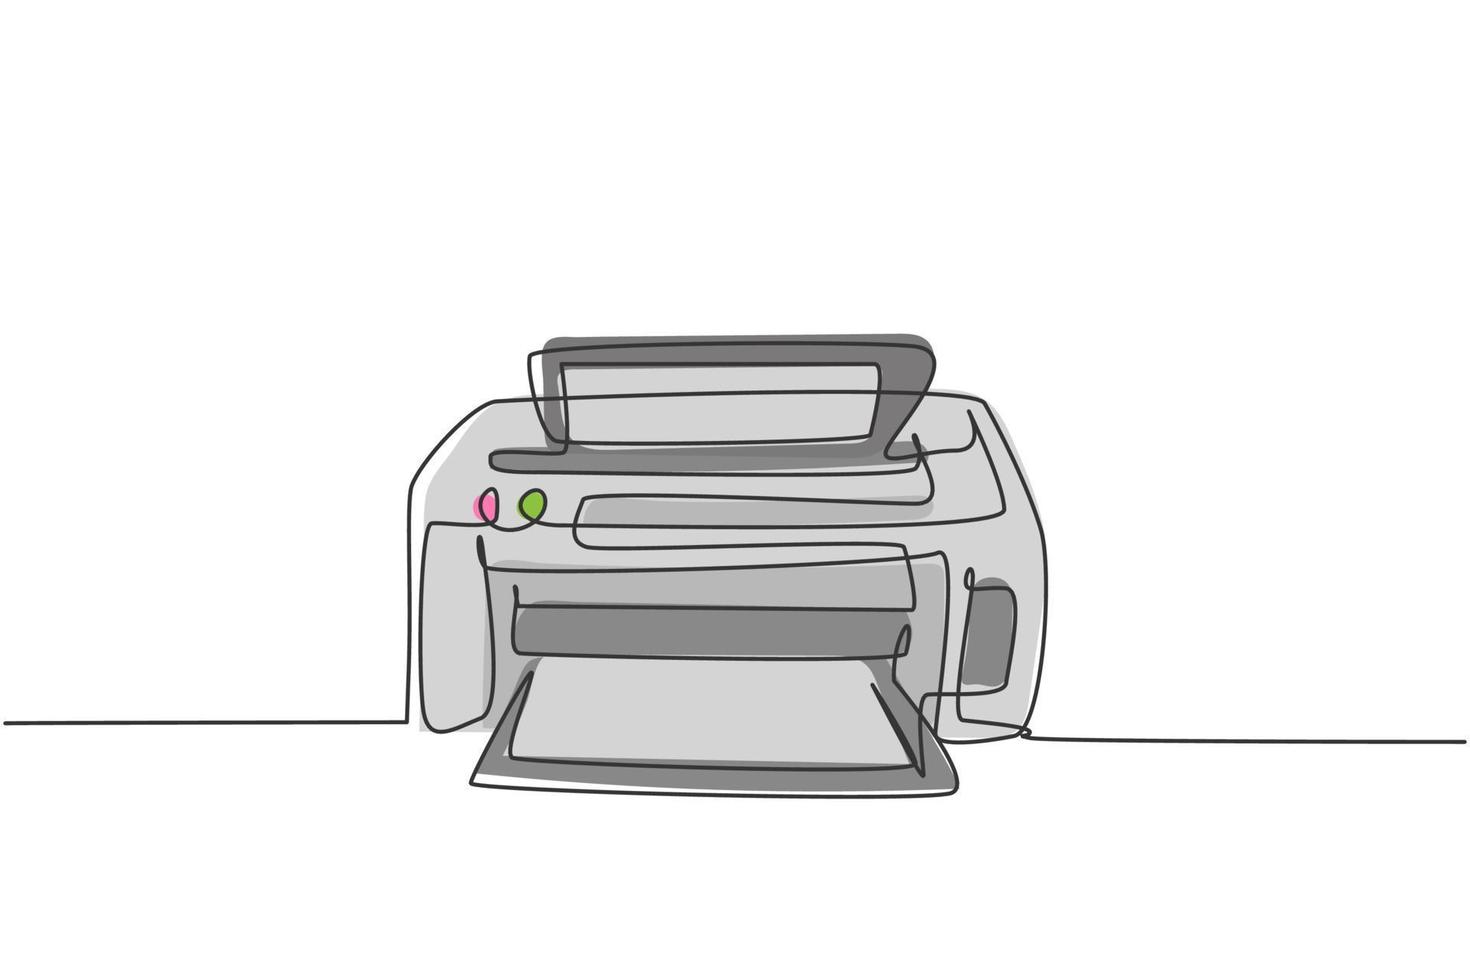 un disegno a linea continua della stampante a getto d'inchiostro digitale per le esigenze di stampa dell'azienda. concetto di strumenti di piccole apparecchiature per ufficio di elettricità. illustrazione grafica vettoriale di design a linea singola alla moda